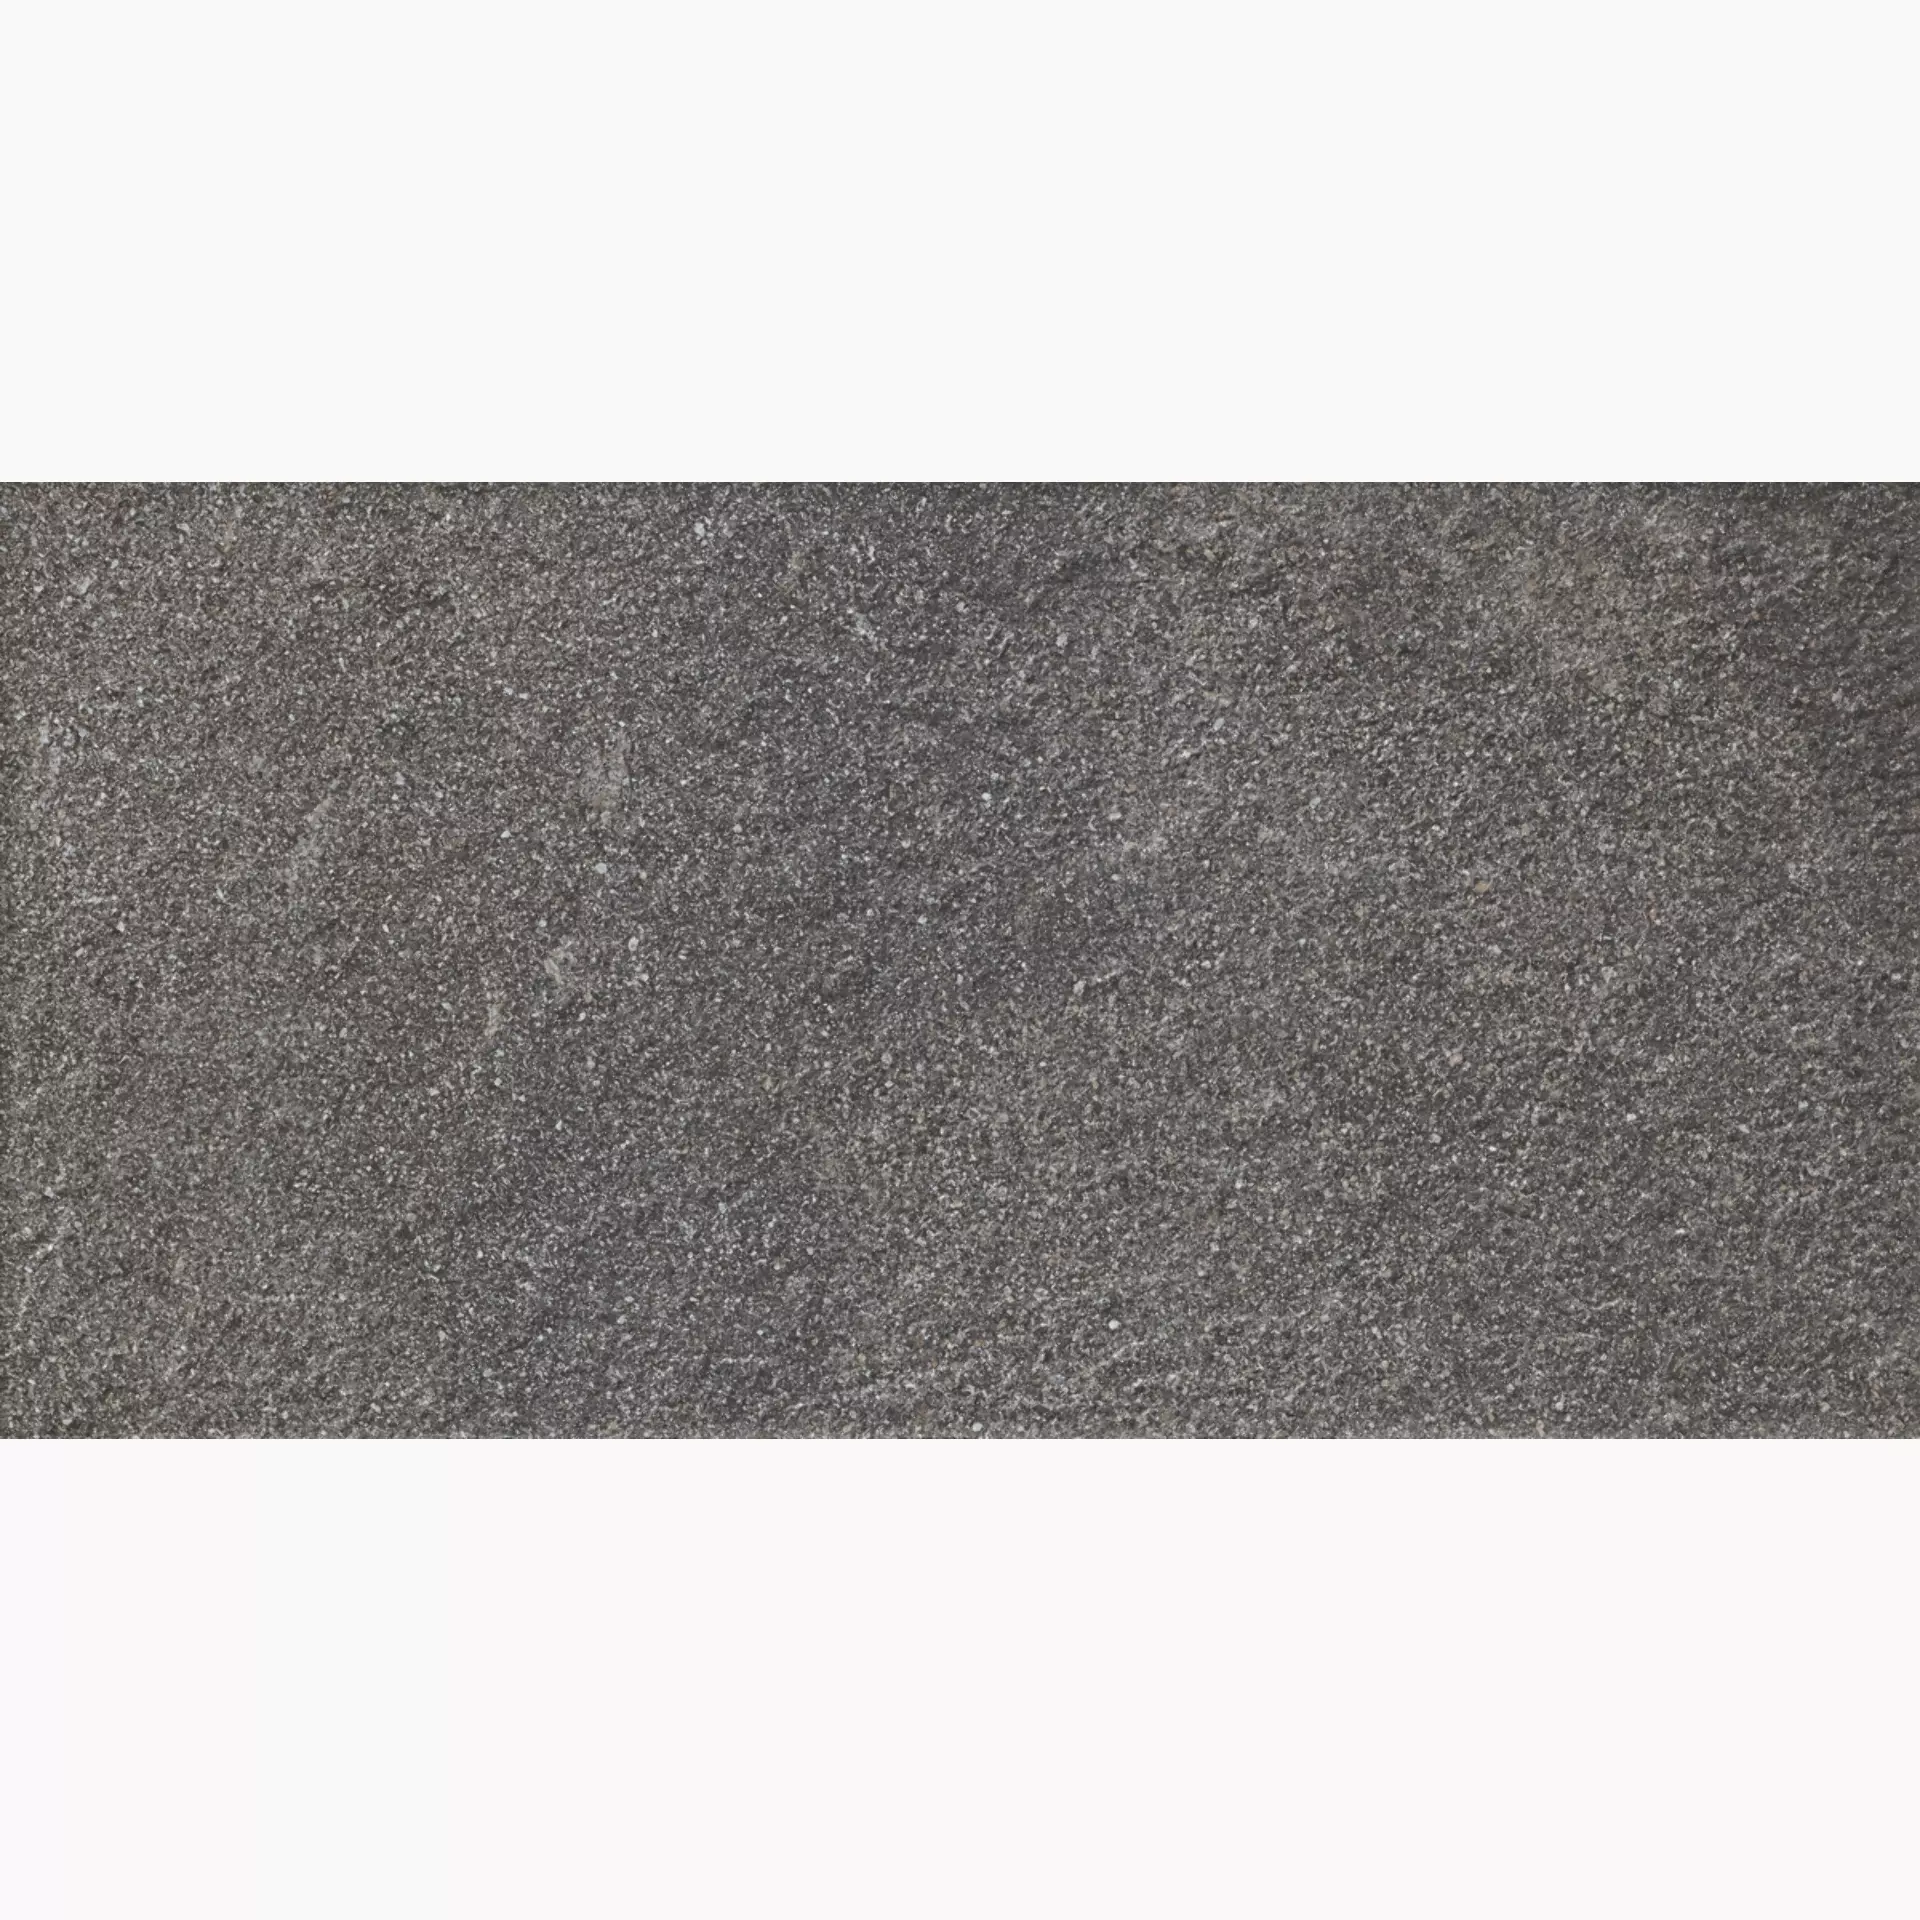 Ragno Stoneway Porfido Black Strutturato R47E strutturato 30x60cm 9,5mm